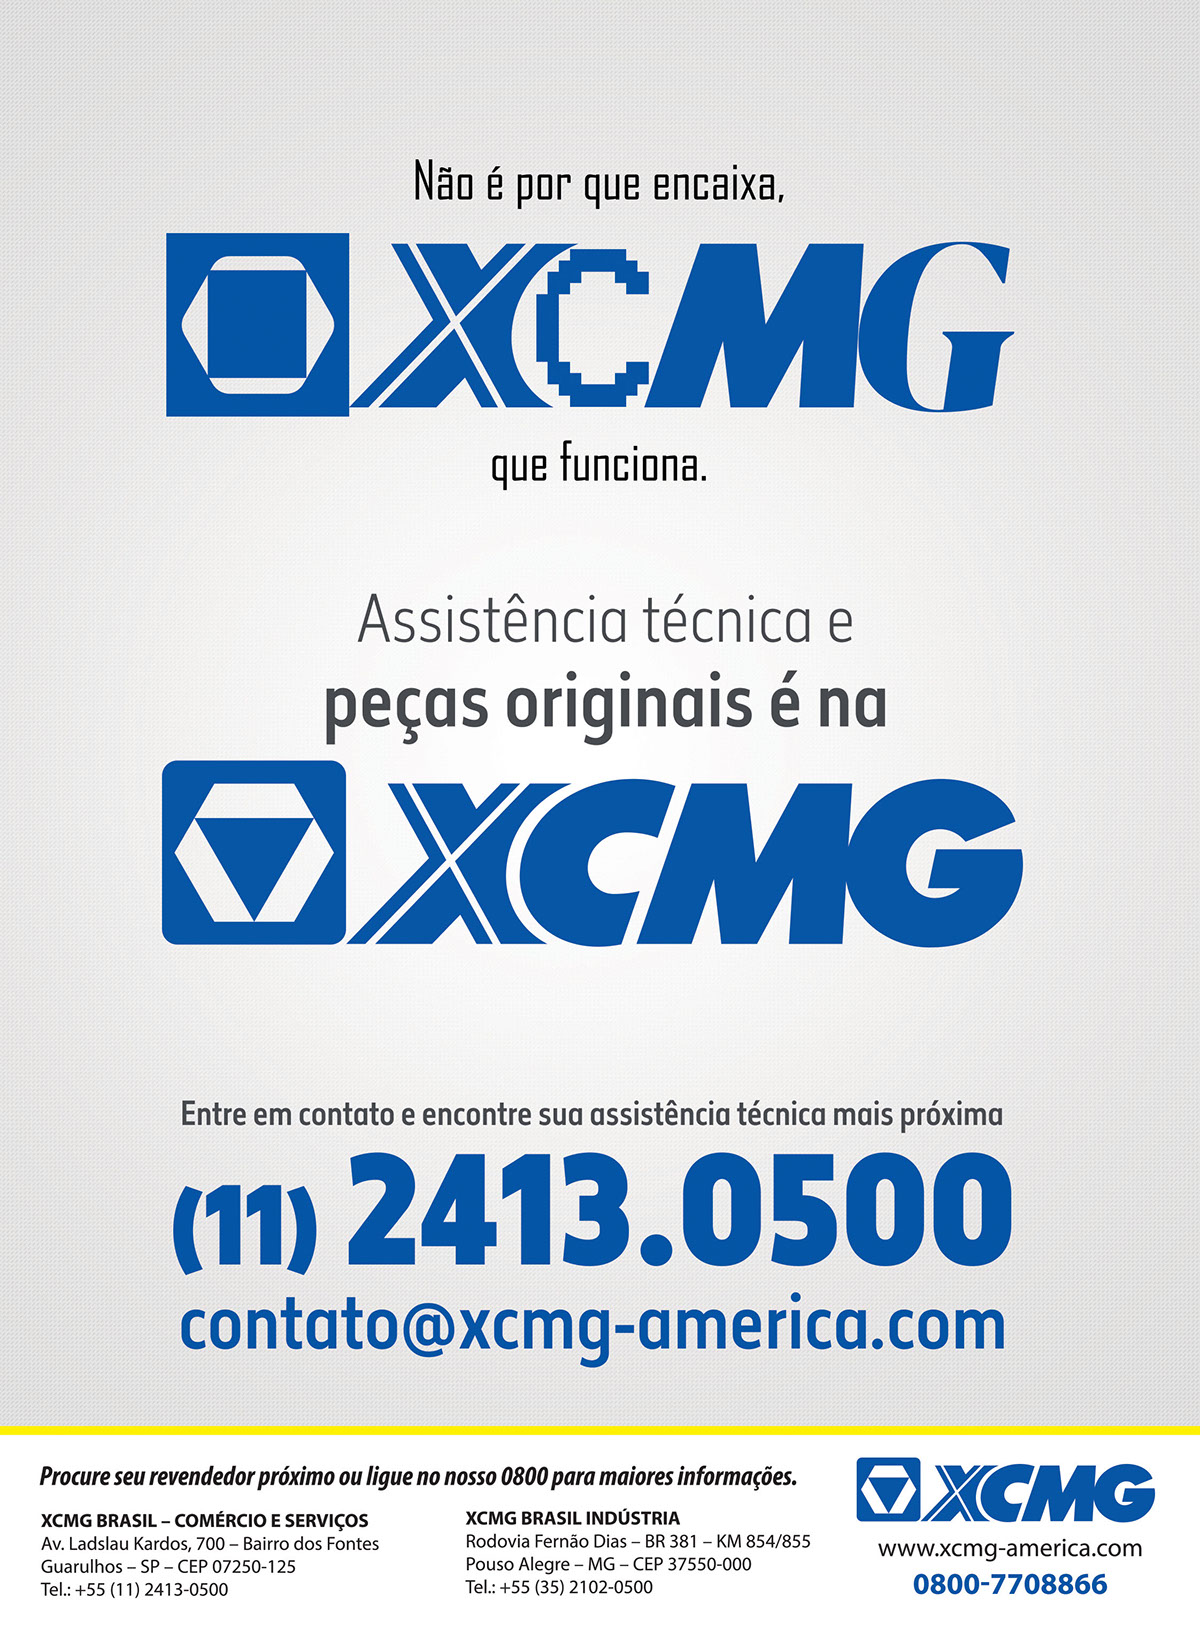 magazine Advertising  design heavy machinery XCMG